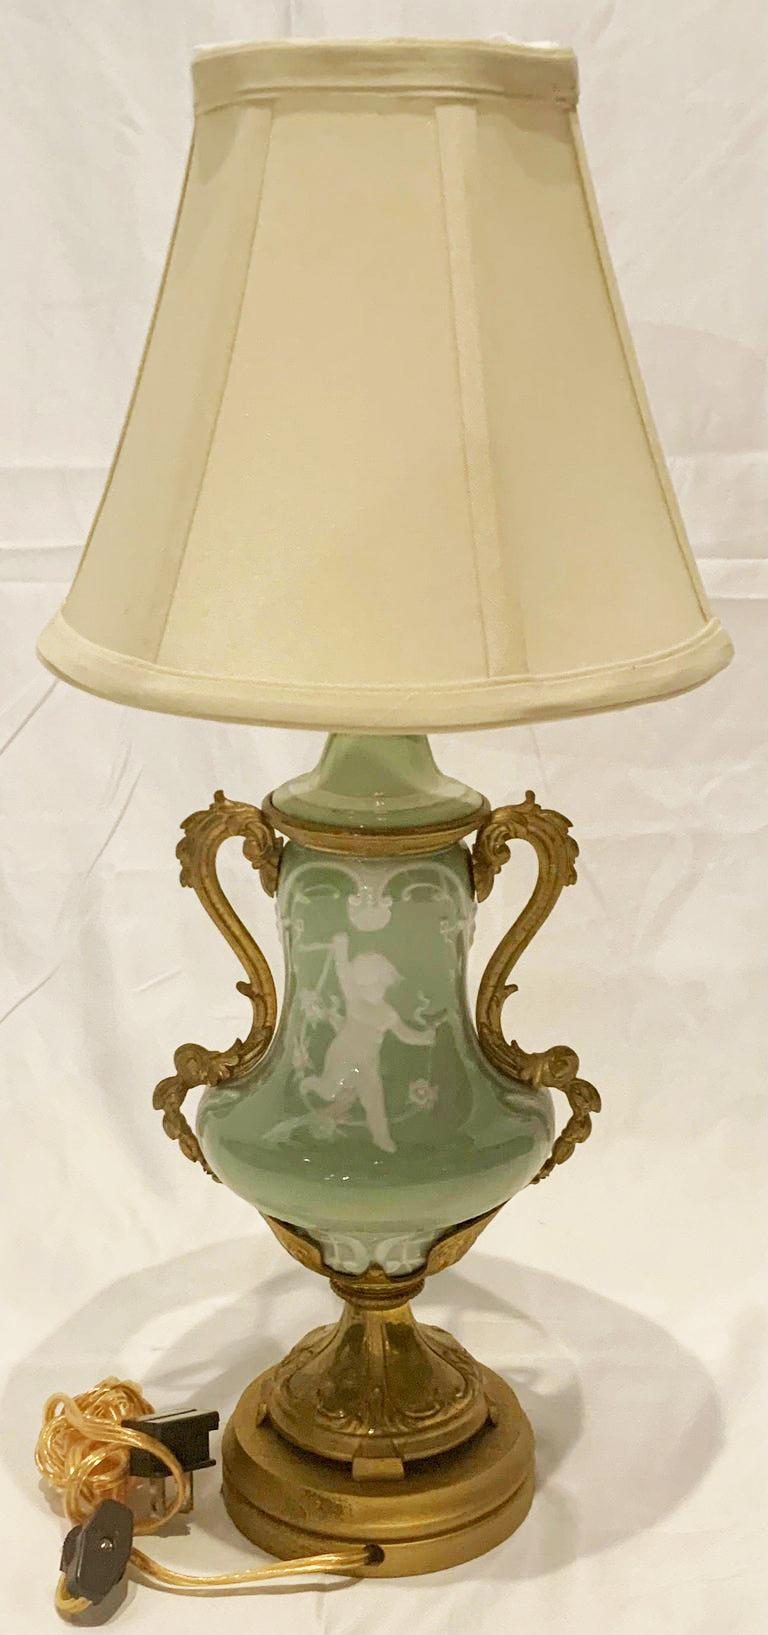 Petite lampe ancienne française en porcelaine céladon avec montures en bronze d'or, Circa 1880's.